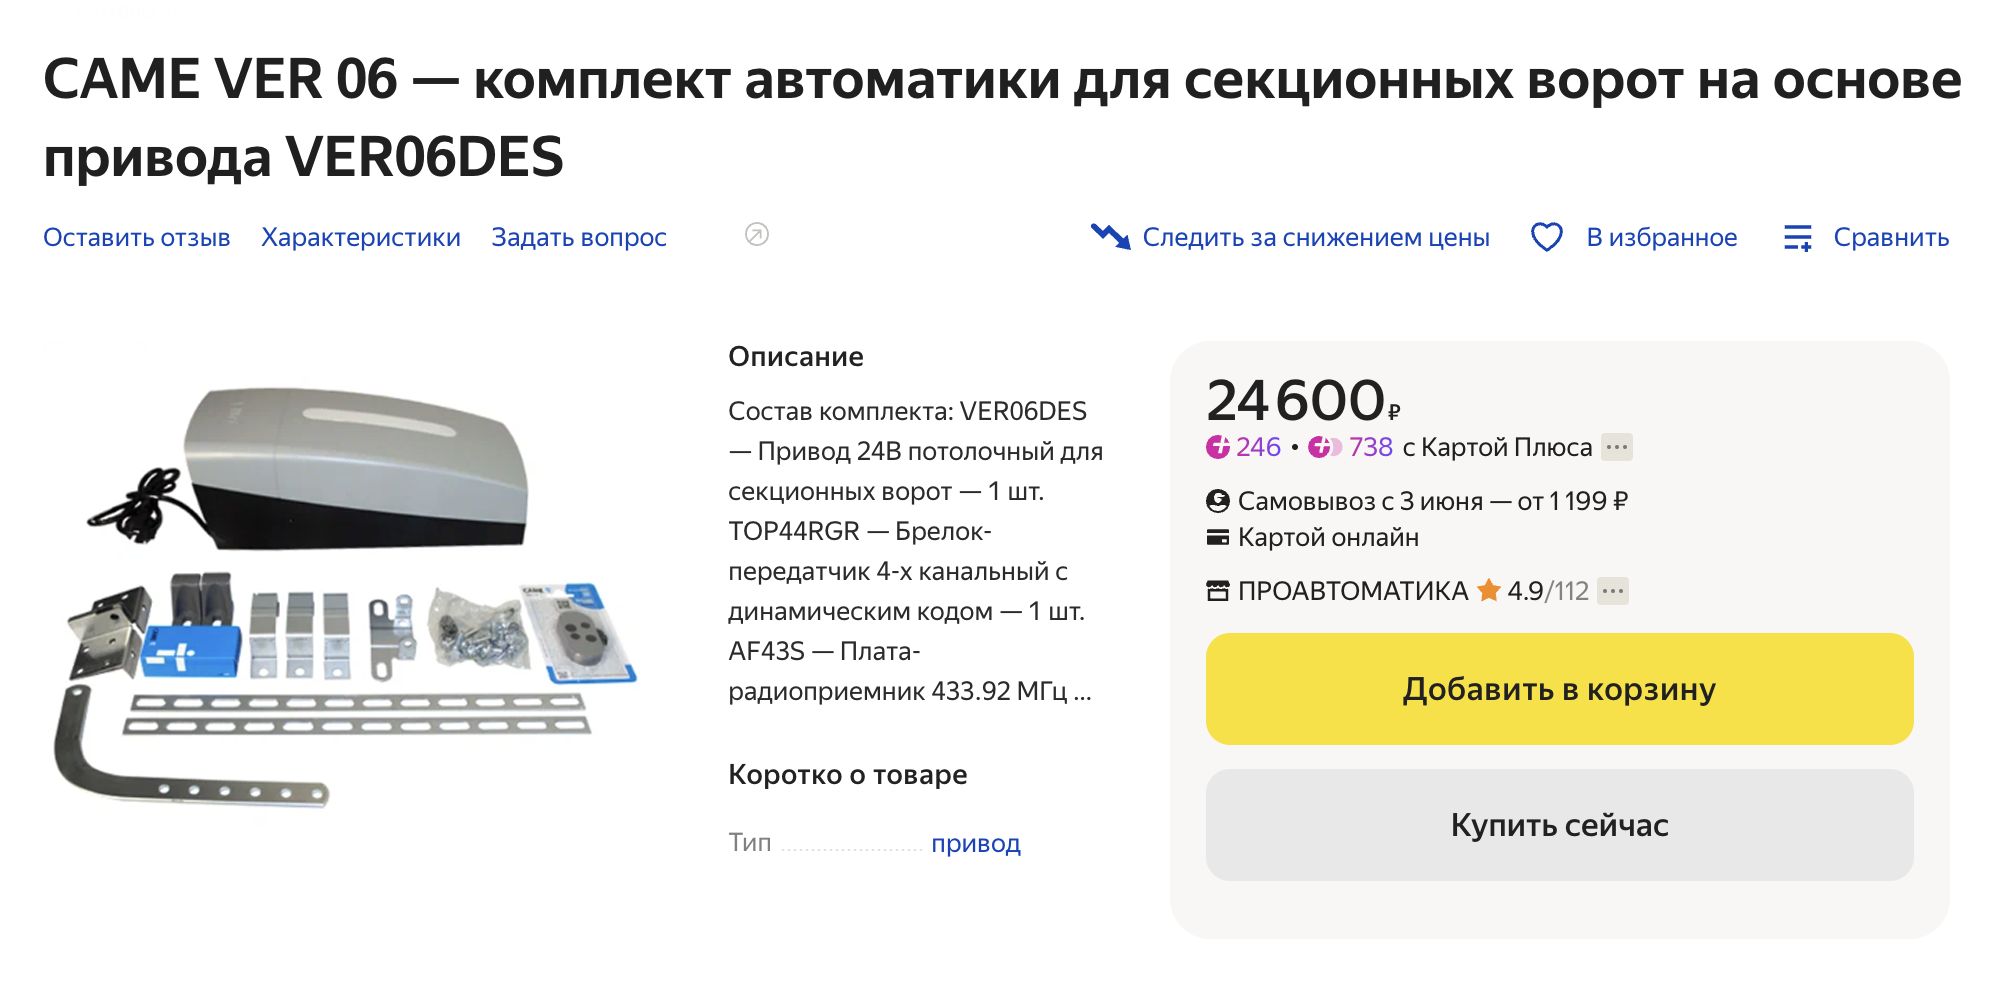 Так выглядит привод для секционных ворот — в данном случае модель производителя CAME стоит 24 600 ₽. Источник: market.yandex.ru